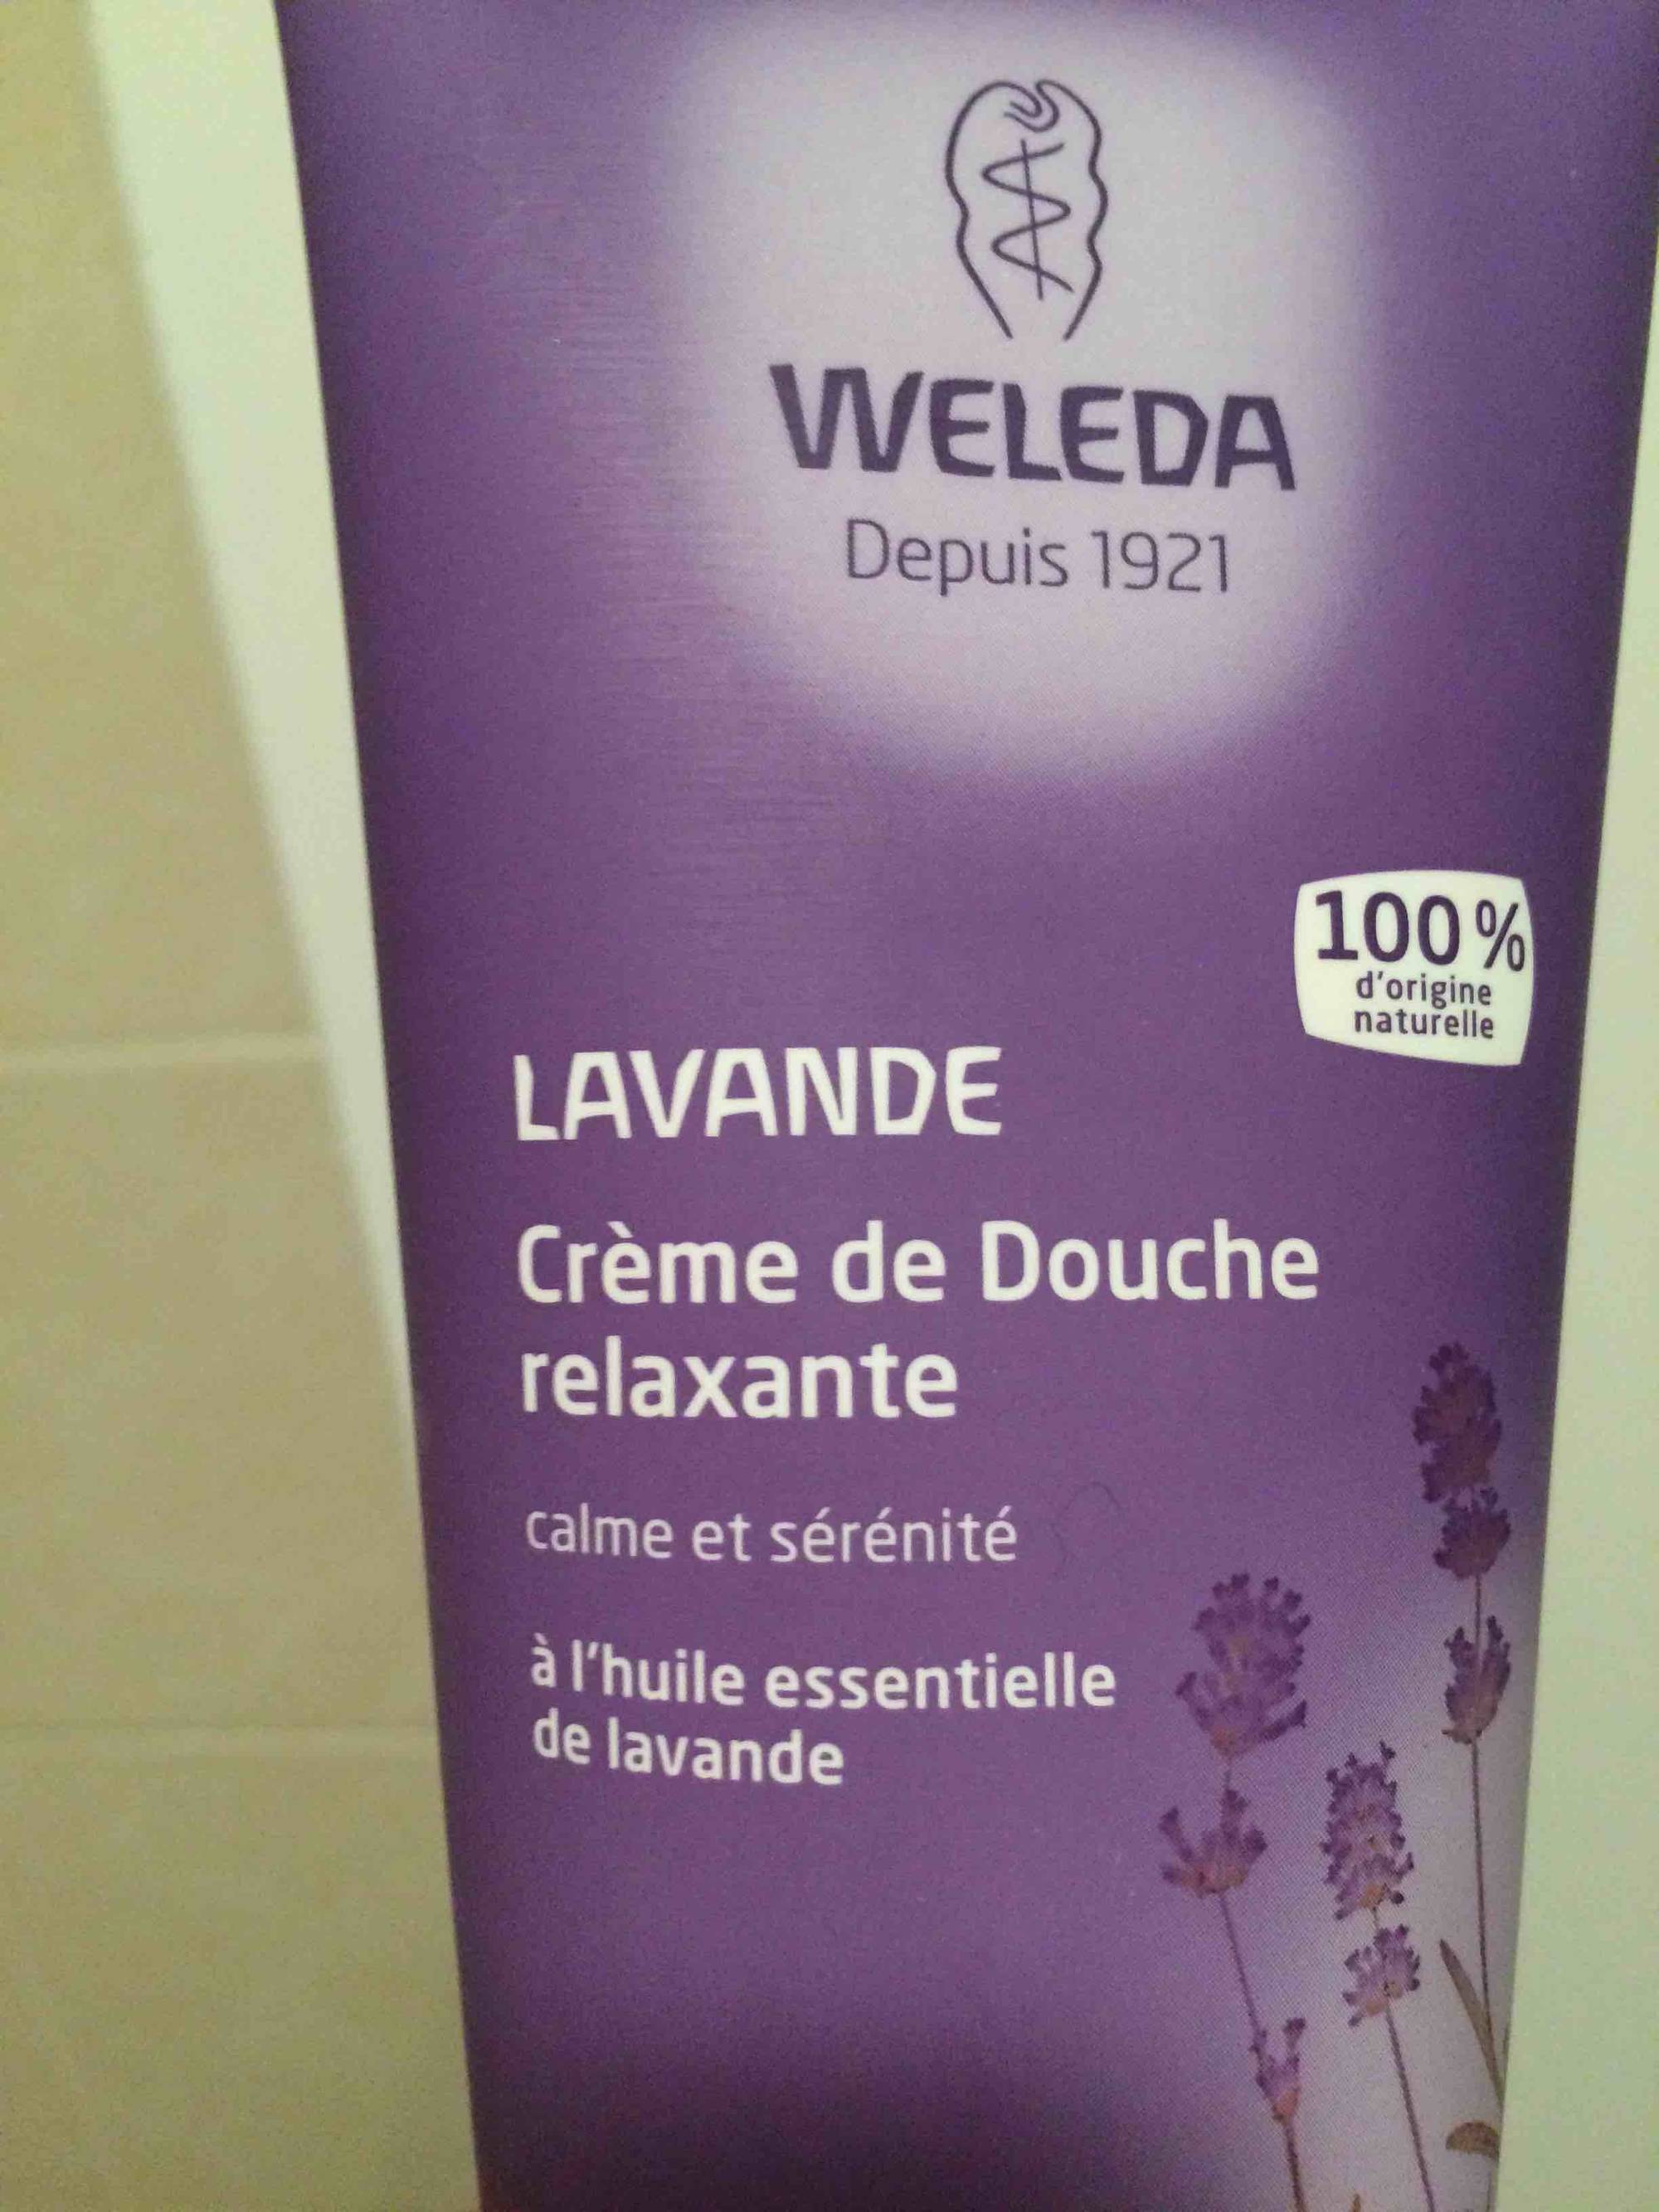 WELEDA - Lavande - Crème de douche relaxante